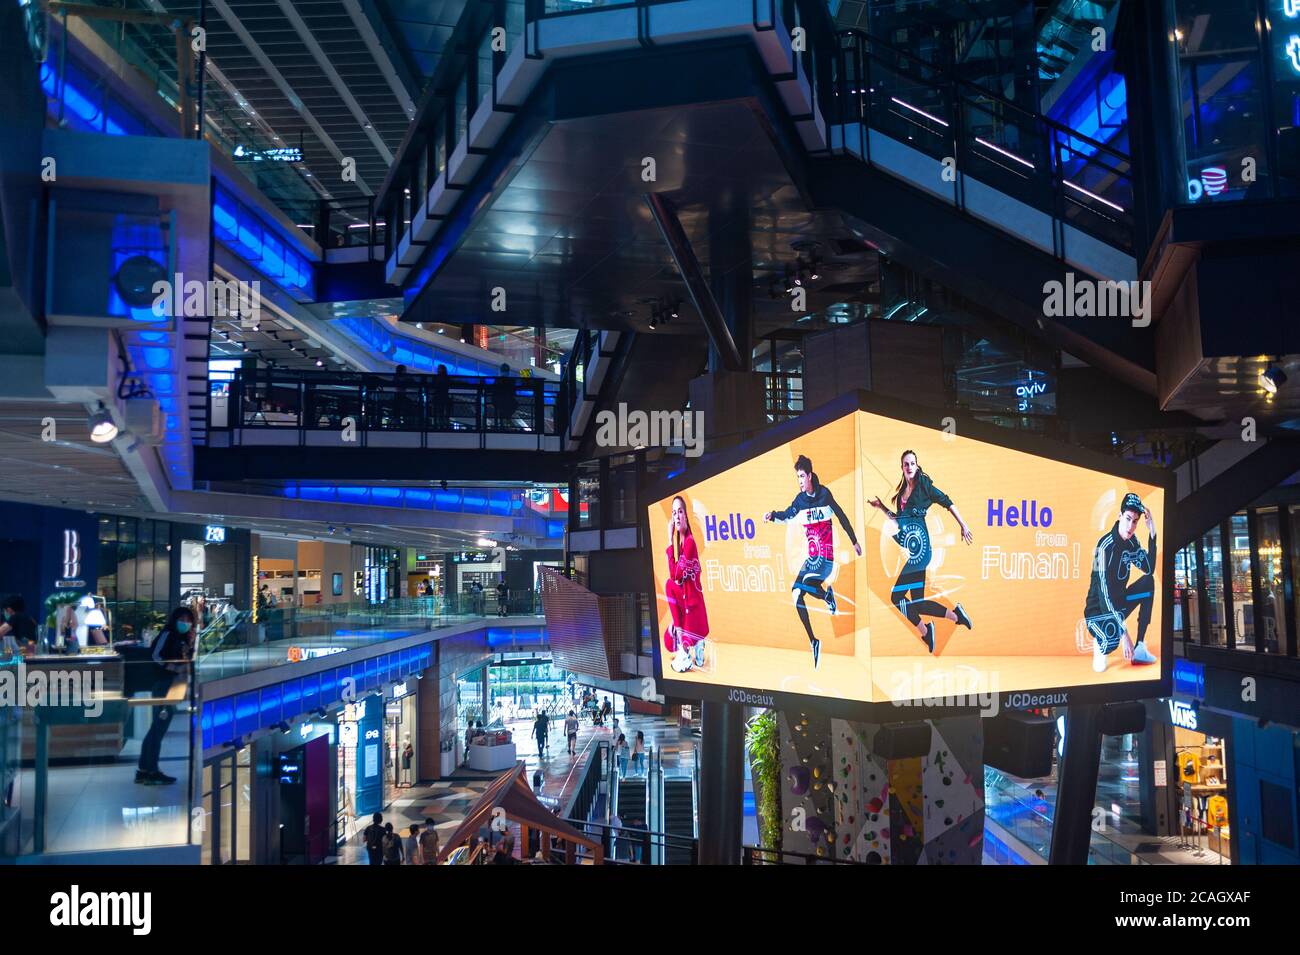 17.07.2020, Singapour, , Singapour - vue intérieure du centre commercial de Funan reconstruit et rénové. Après la levée des restrictions de sortie, dans Banque D'Images